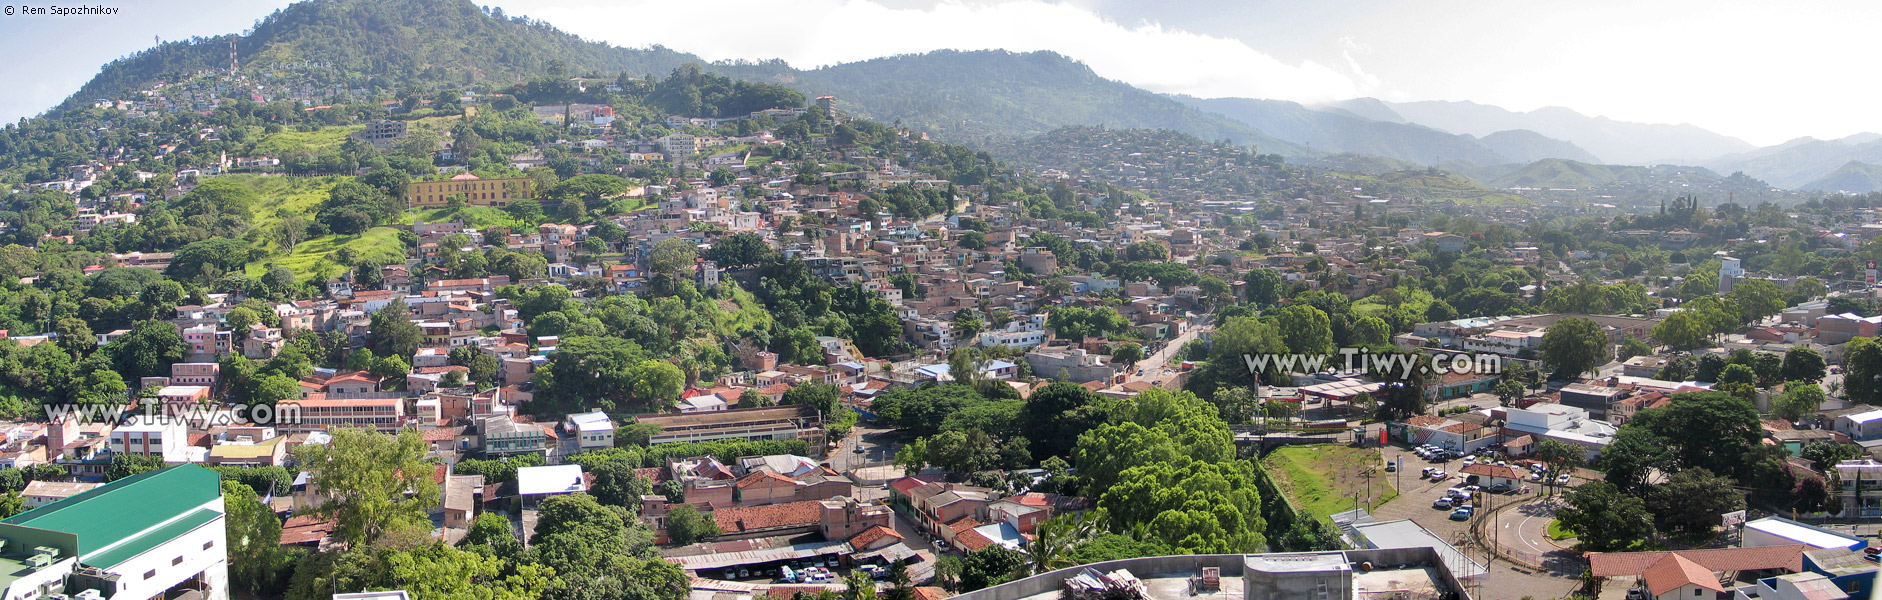 Vista de Tegucigalpa desde el balcn del hotel Plaza Libertador